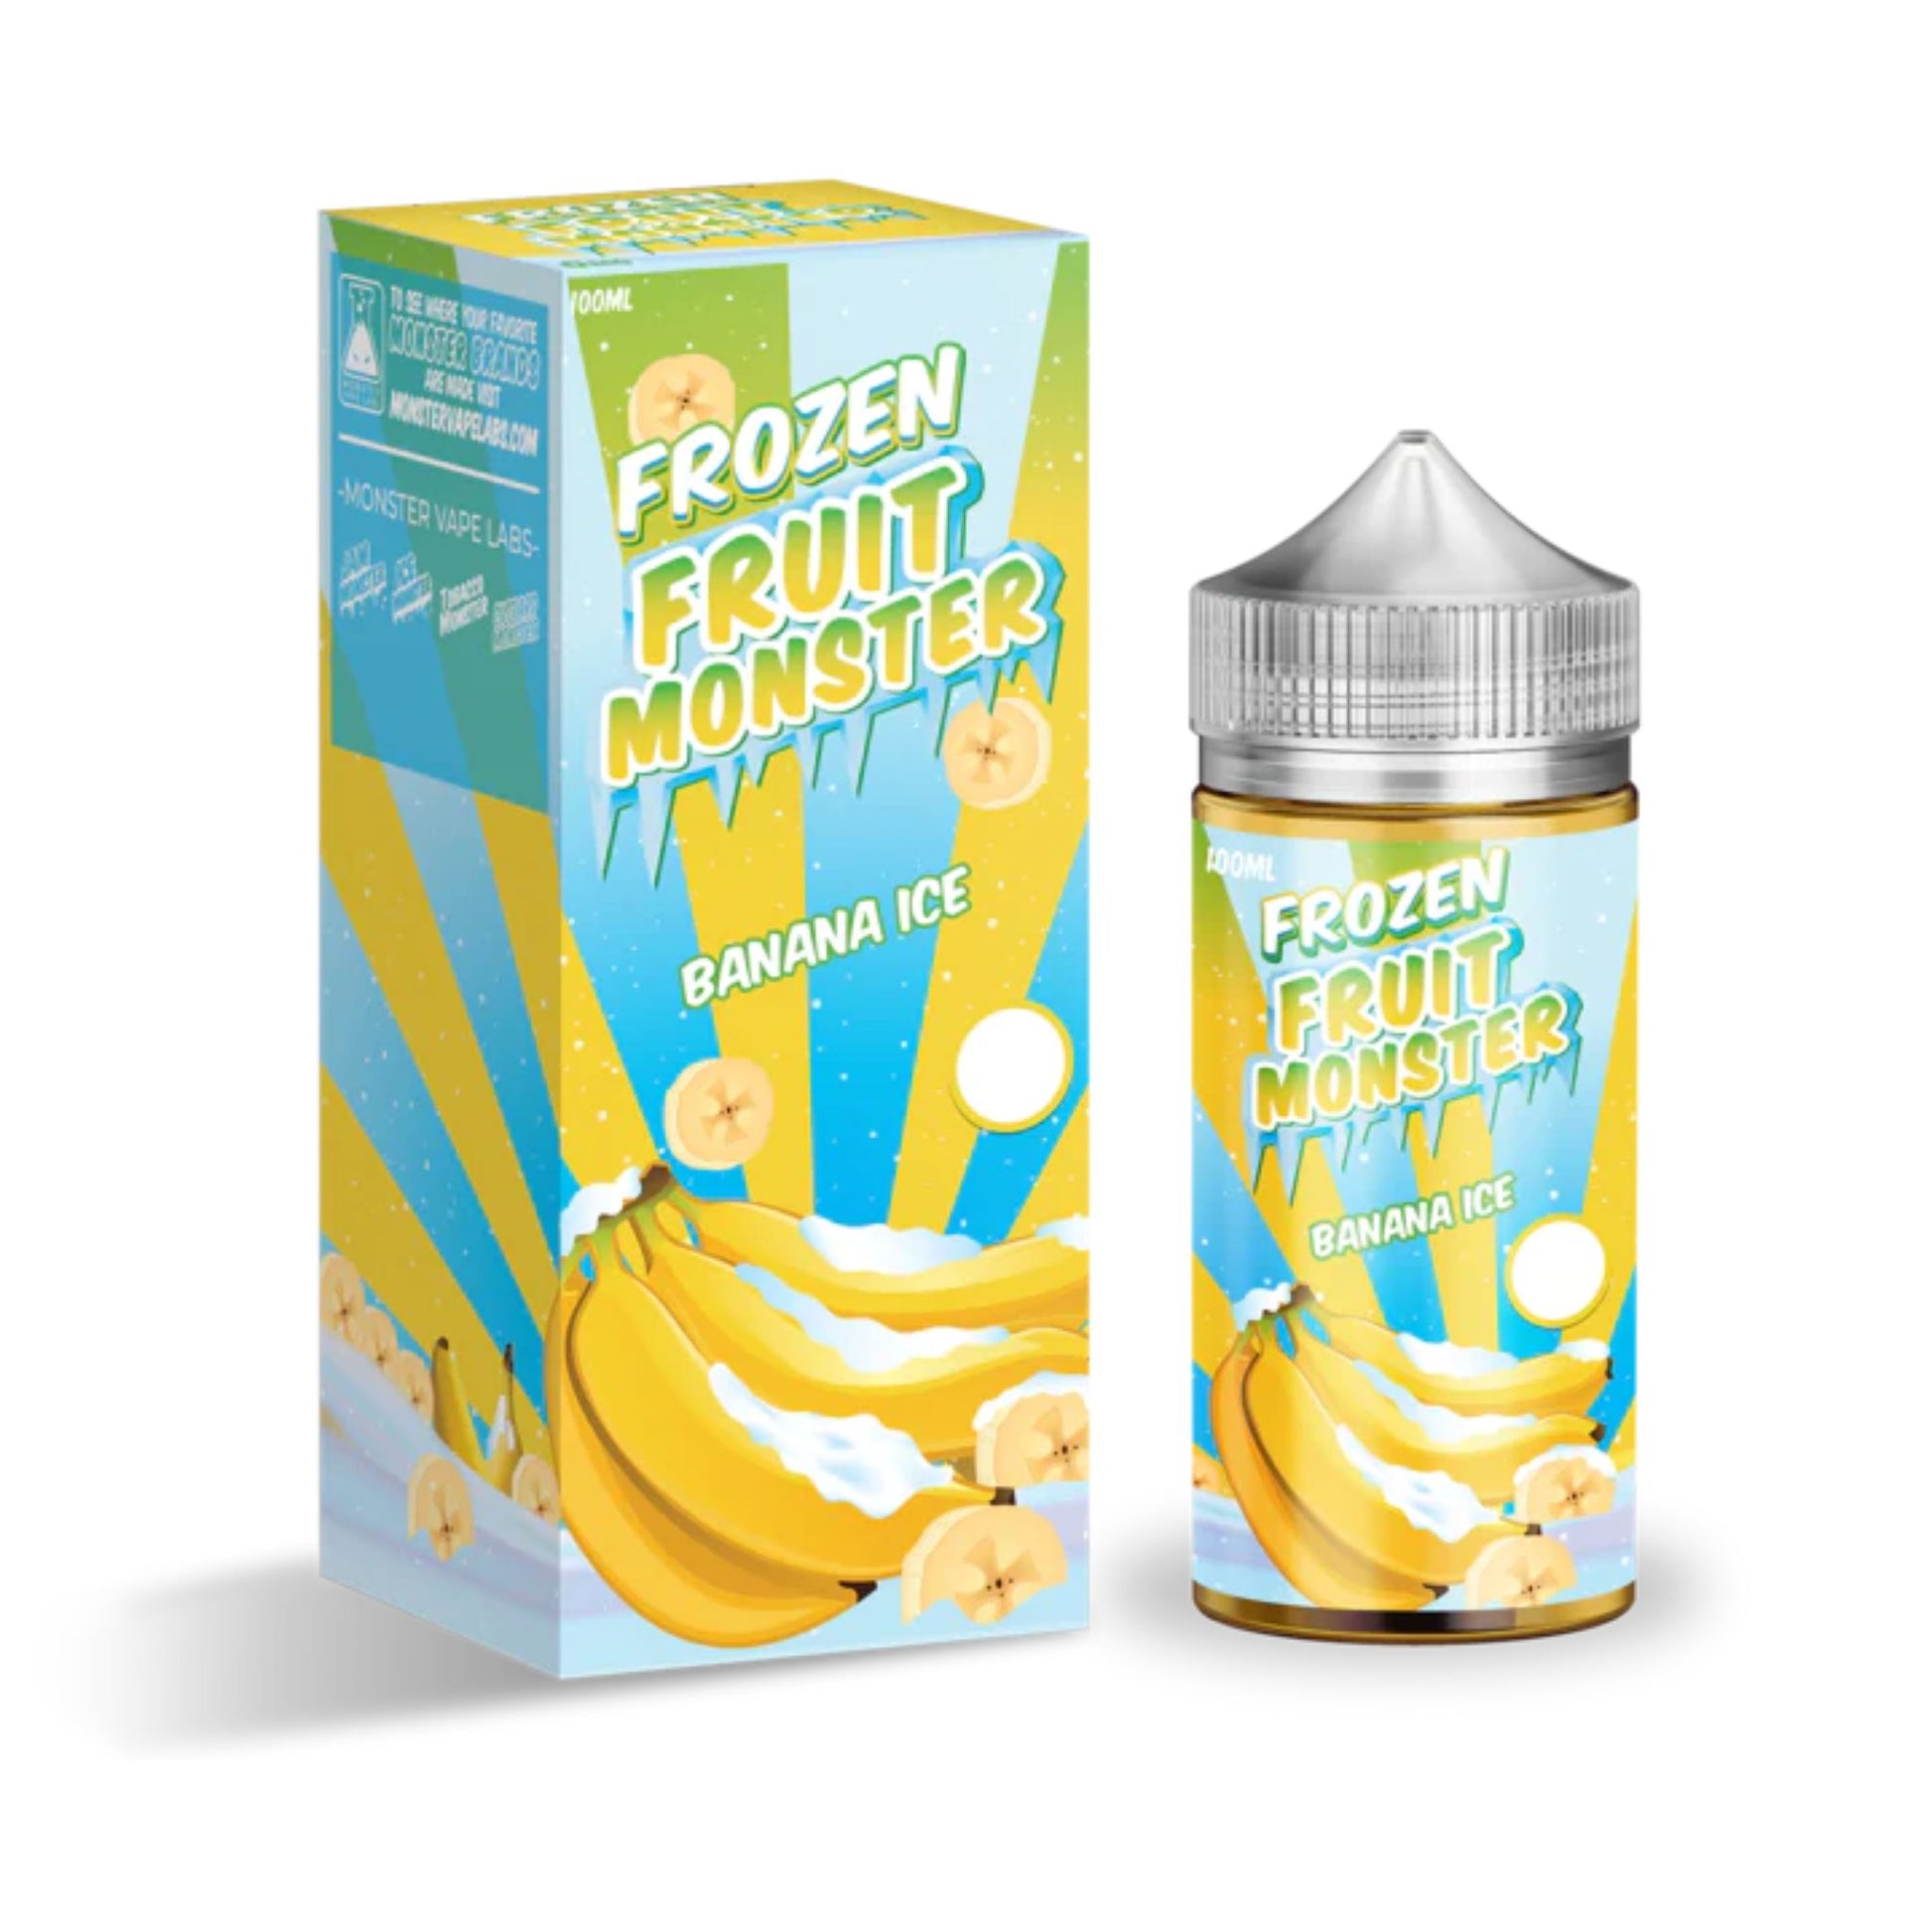 Frozen Fruit Monster | Banana Ice 100ml bottle and box